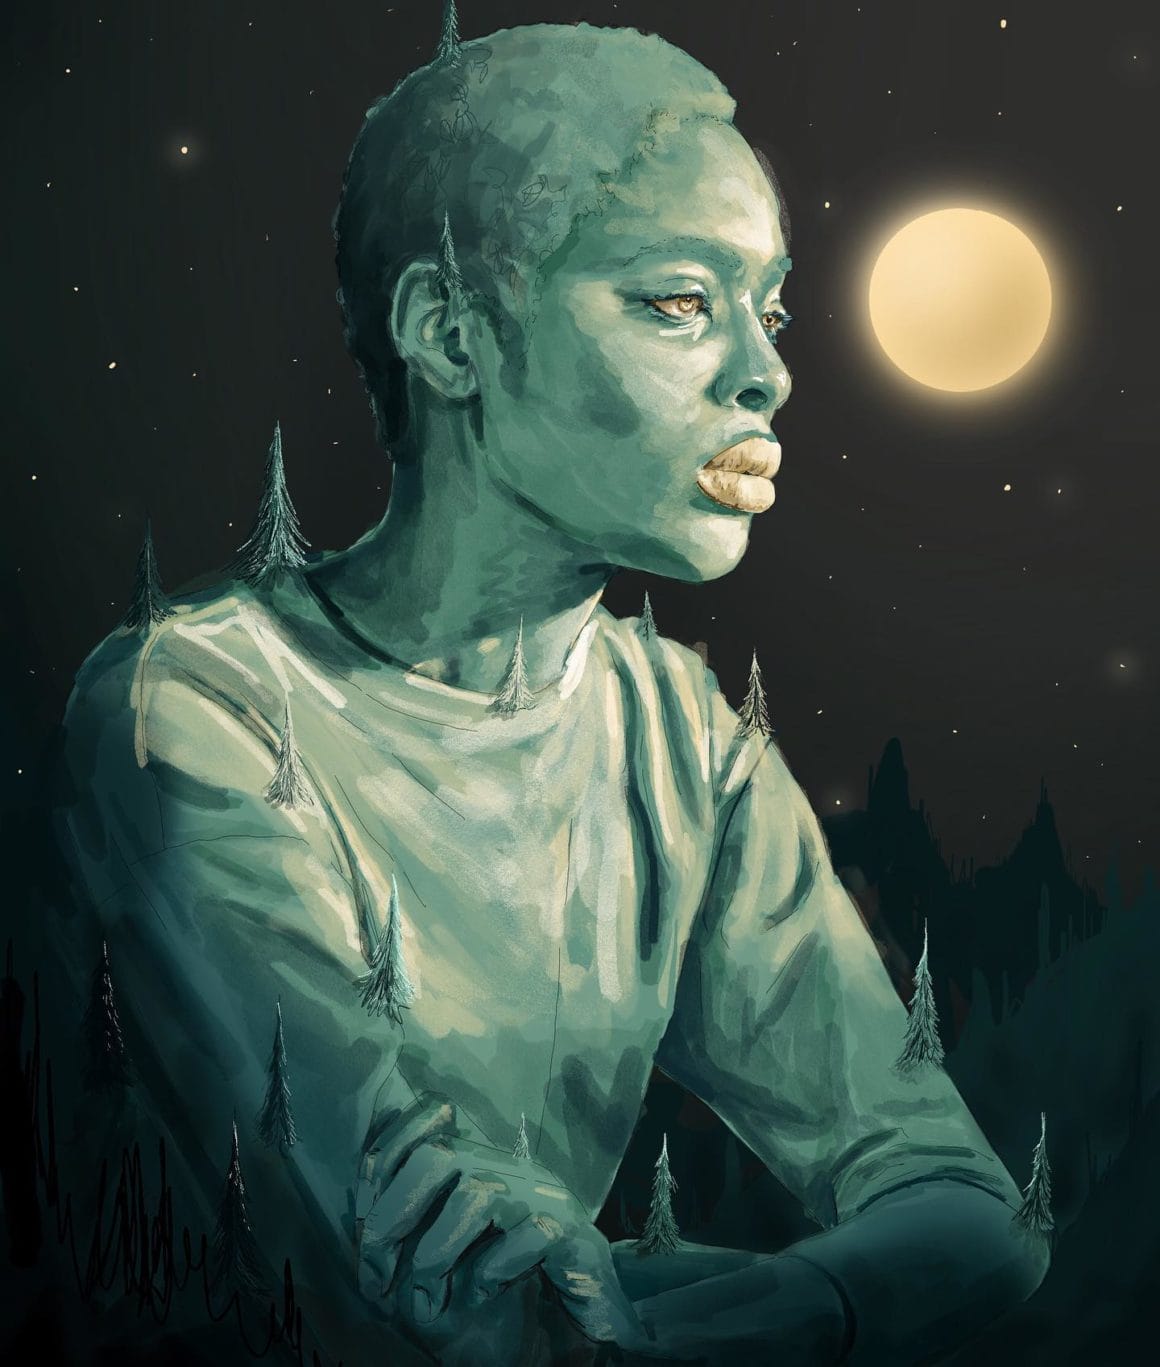 Une femme noire aux cheveux courts. est assise et regarde la lune toute petite. Sur elle on aperçoit des sapins.